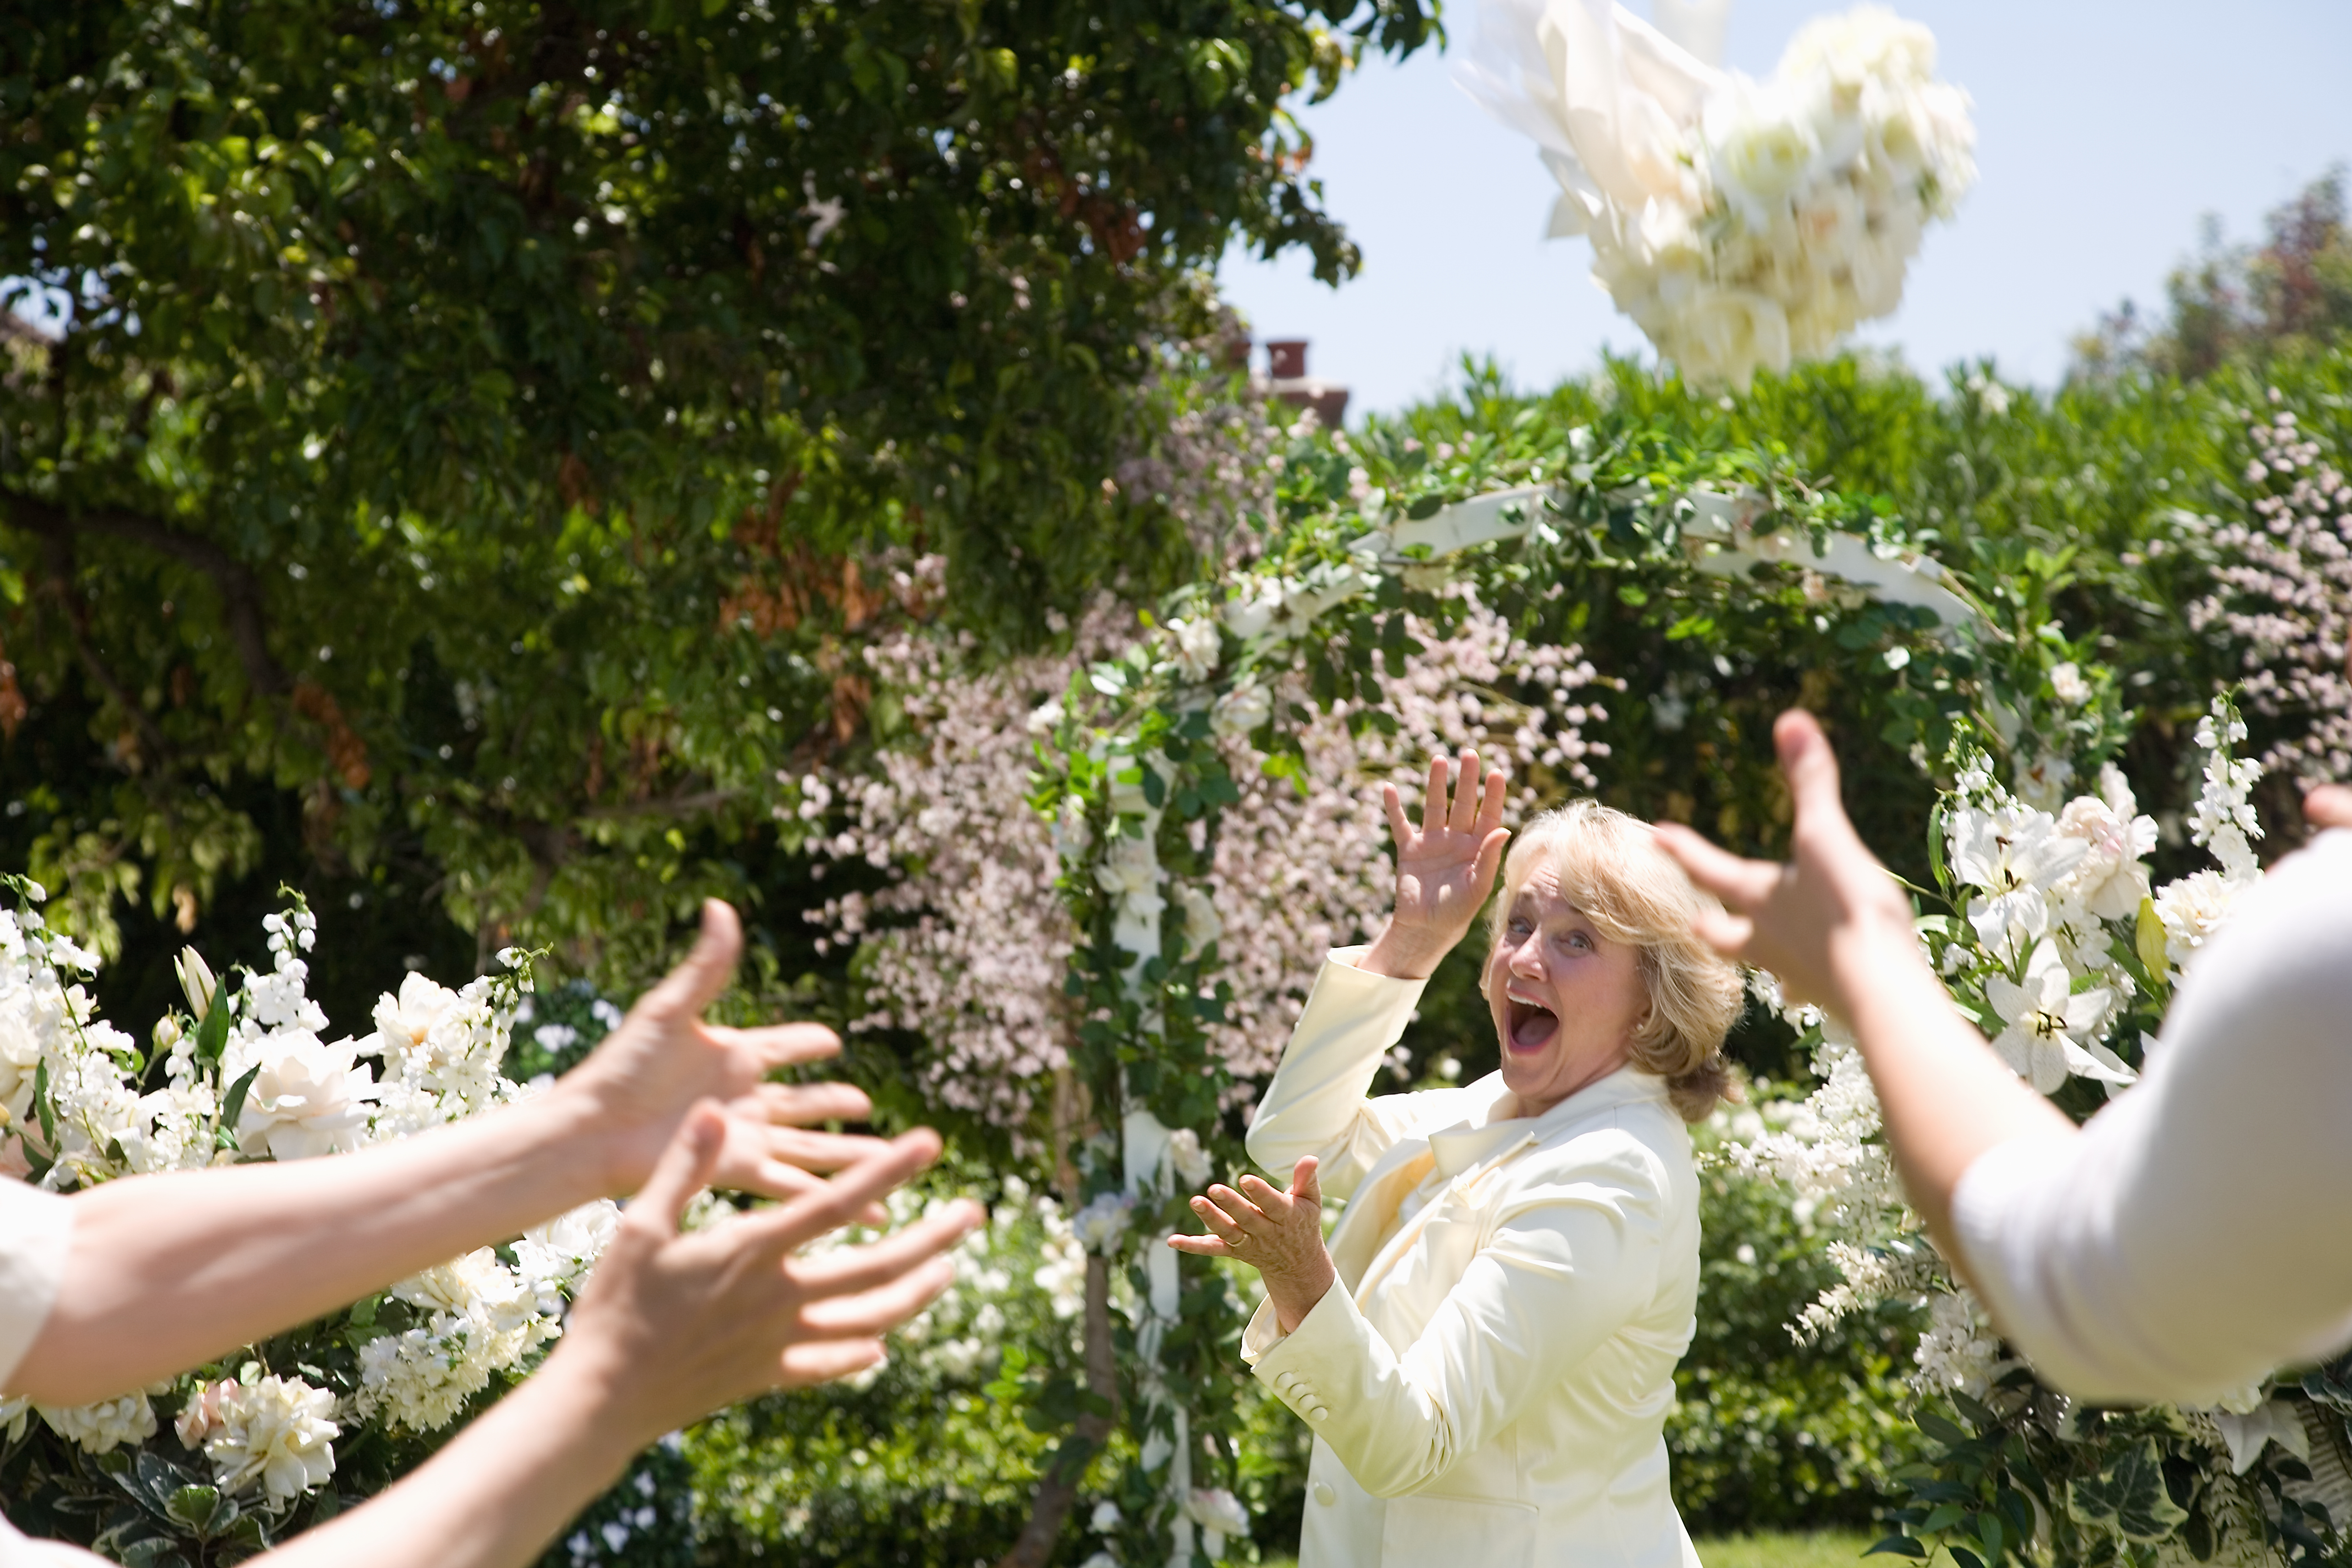 La mariée jette un bouquet de fleurs en riant | Source : Getty Images